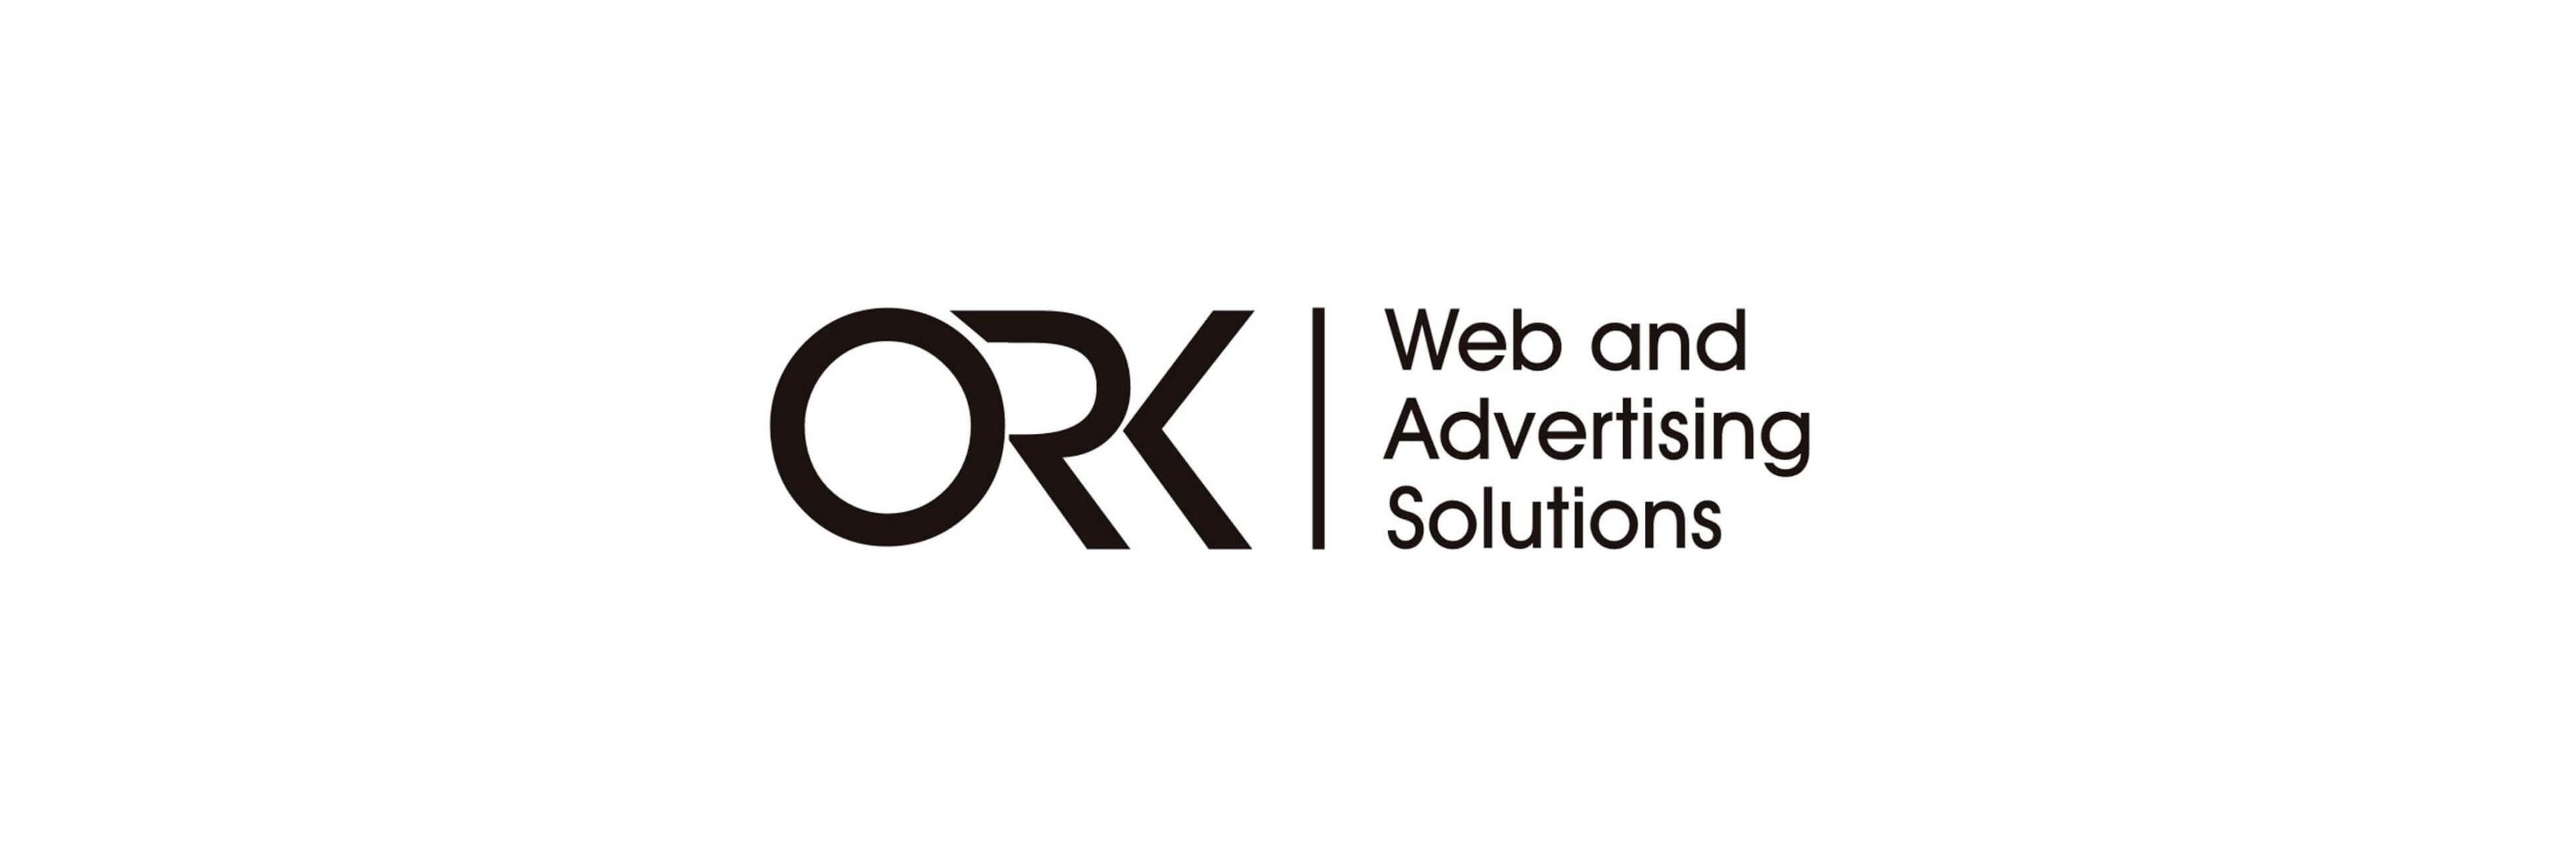 Agenția de publicitate ORK